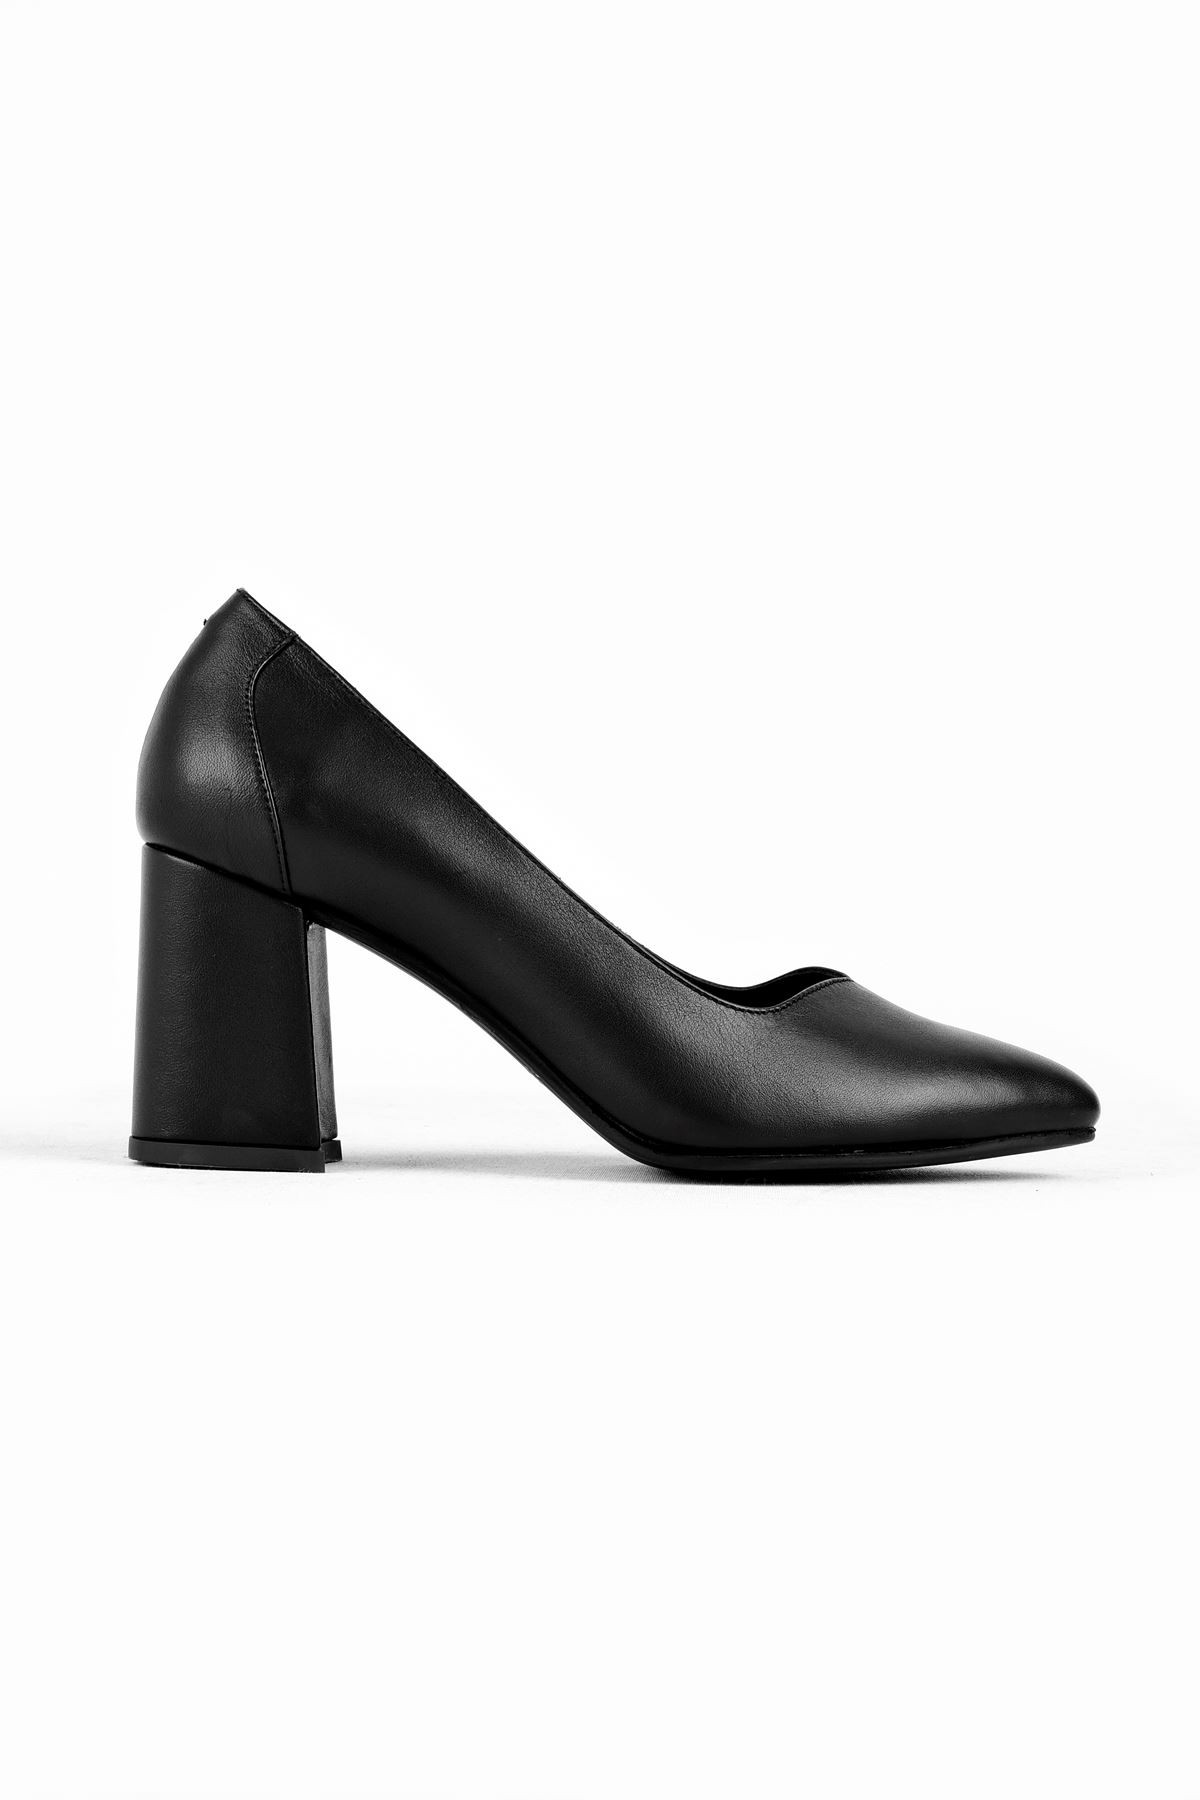 Nera Kadın Hakiki Deri Sivri Burun Topuklu Ayakkabı B3185 - Siyah